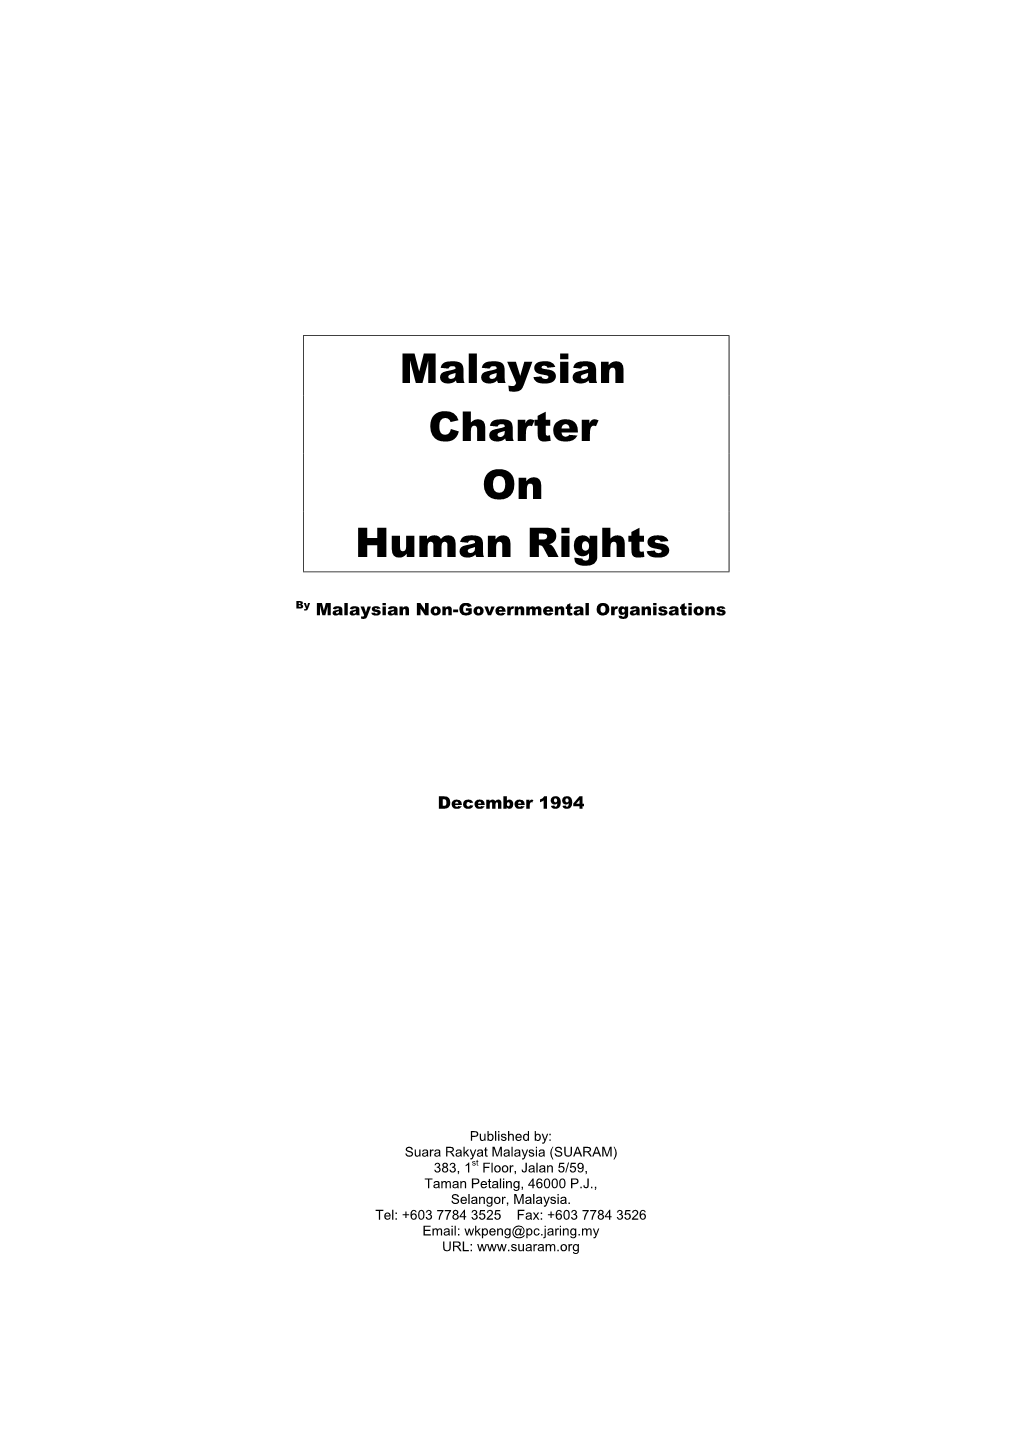 Suruhanjaya Hak Asasi Manusia Malaysia